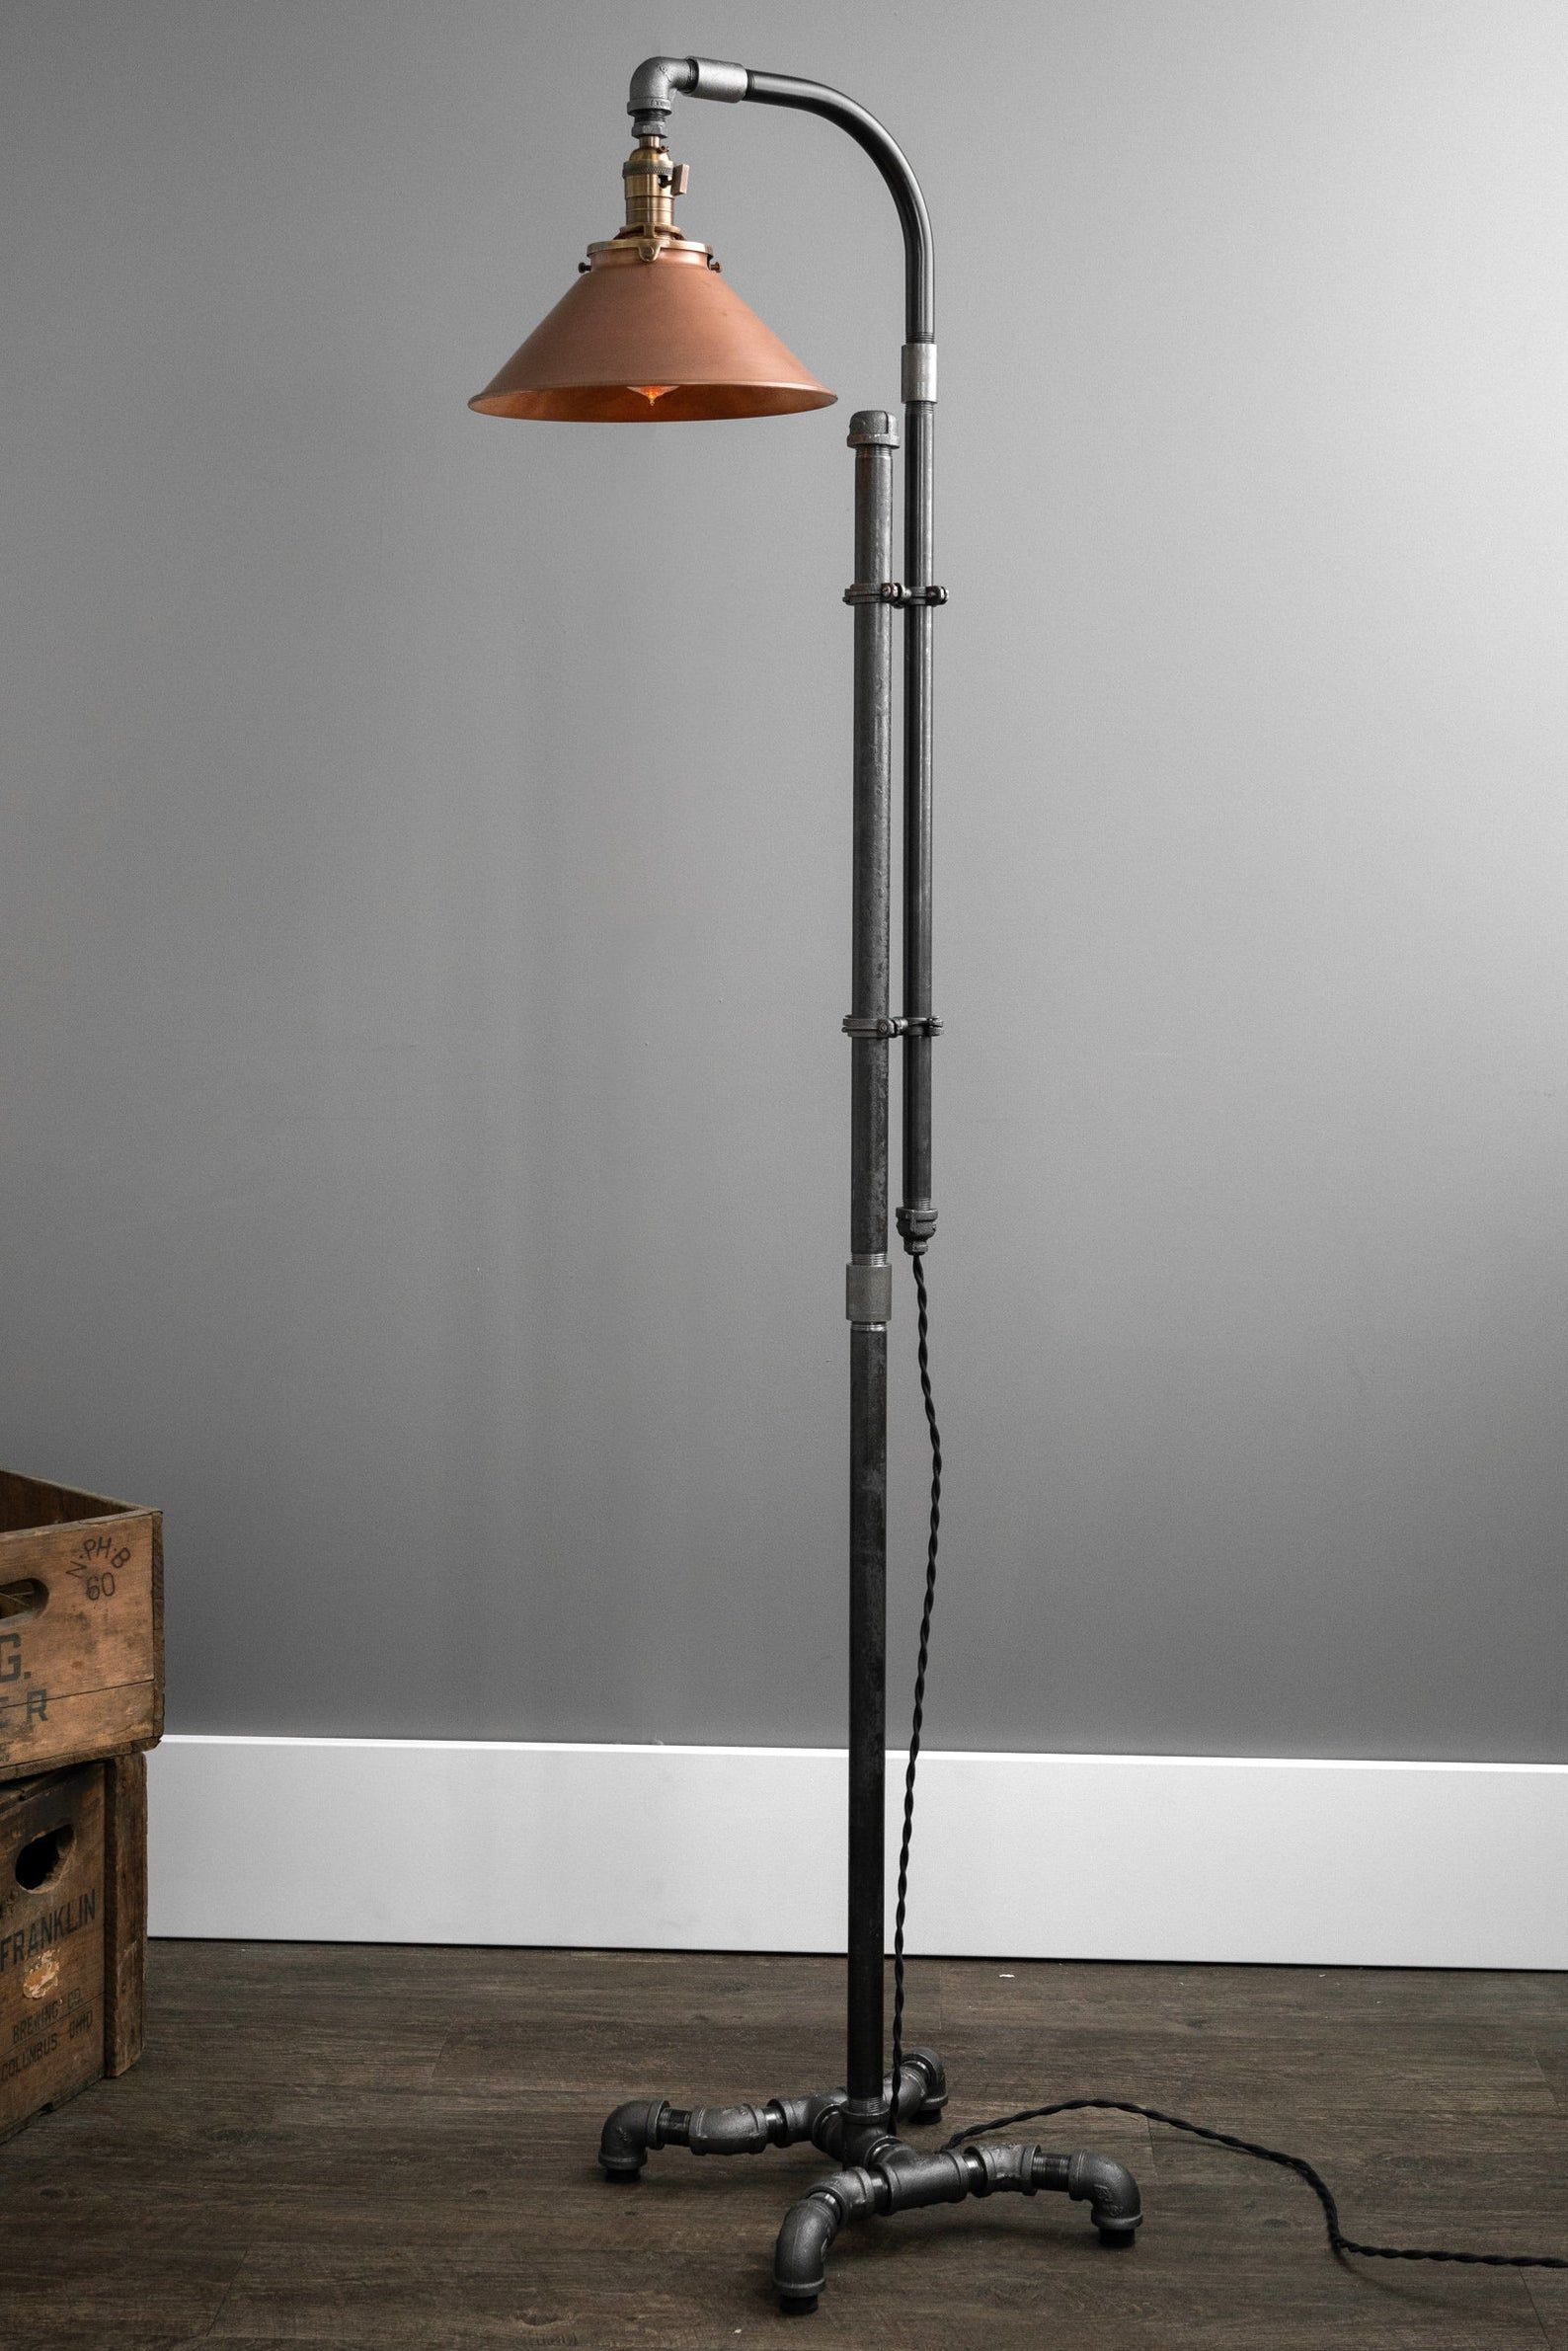 Industrial Floor Lamp Copper Shade Industrial Furniture – Etsy | Diy Floor  Lamp, Copper Floor Lamp, Steampunk Floor Lamp With Regard To Industrial Floor Lamps (Photo 15 of 15)